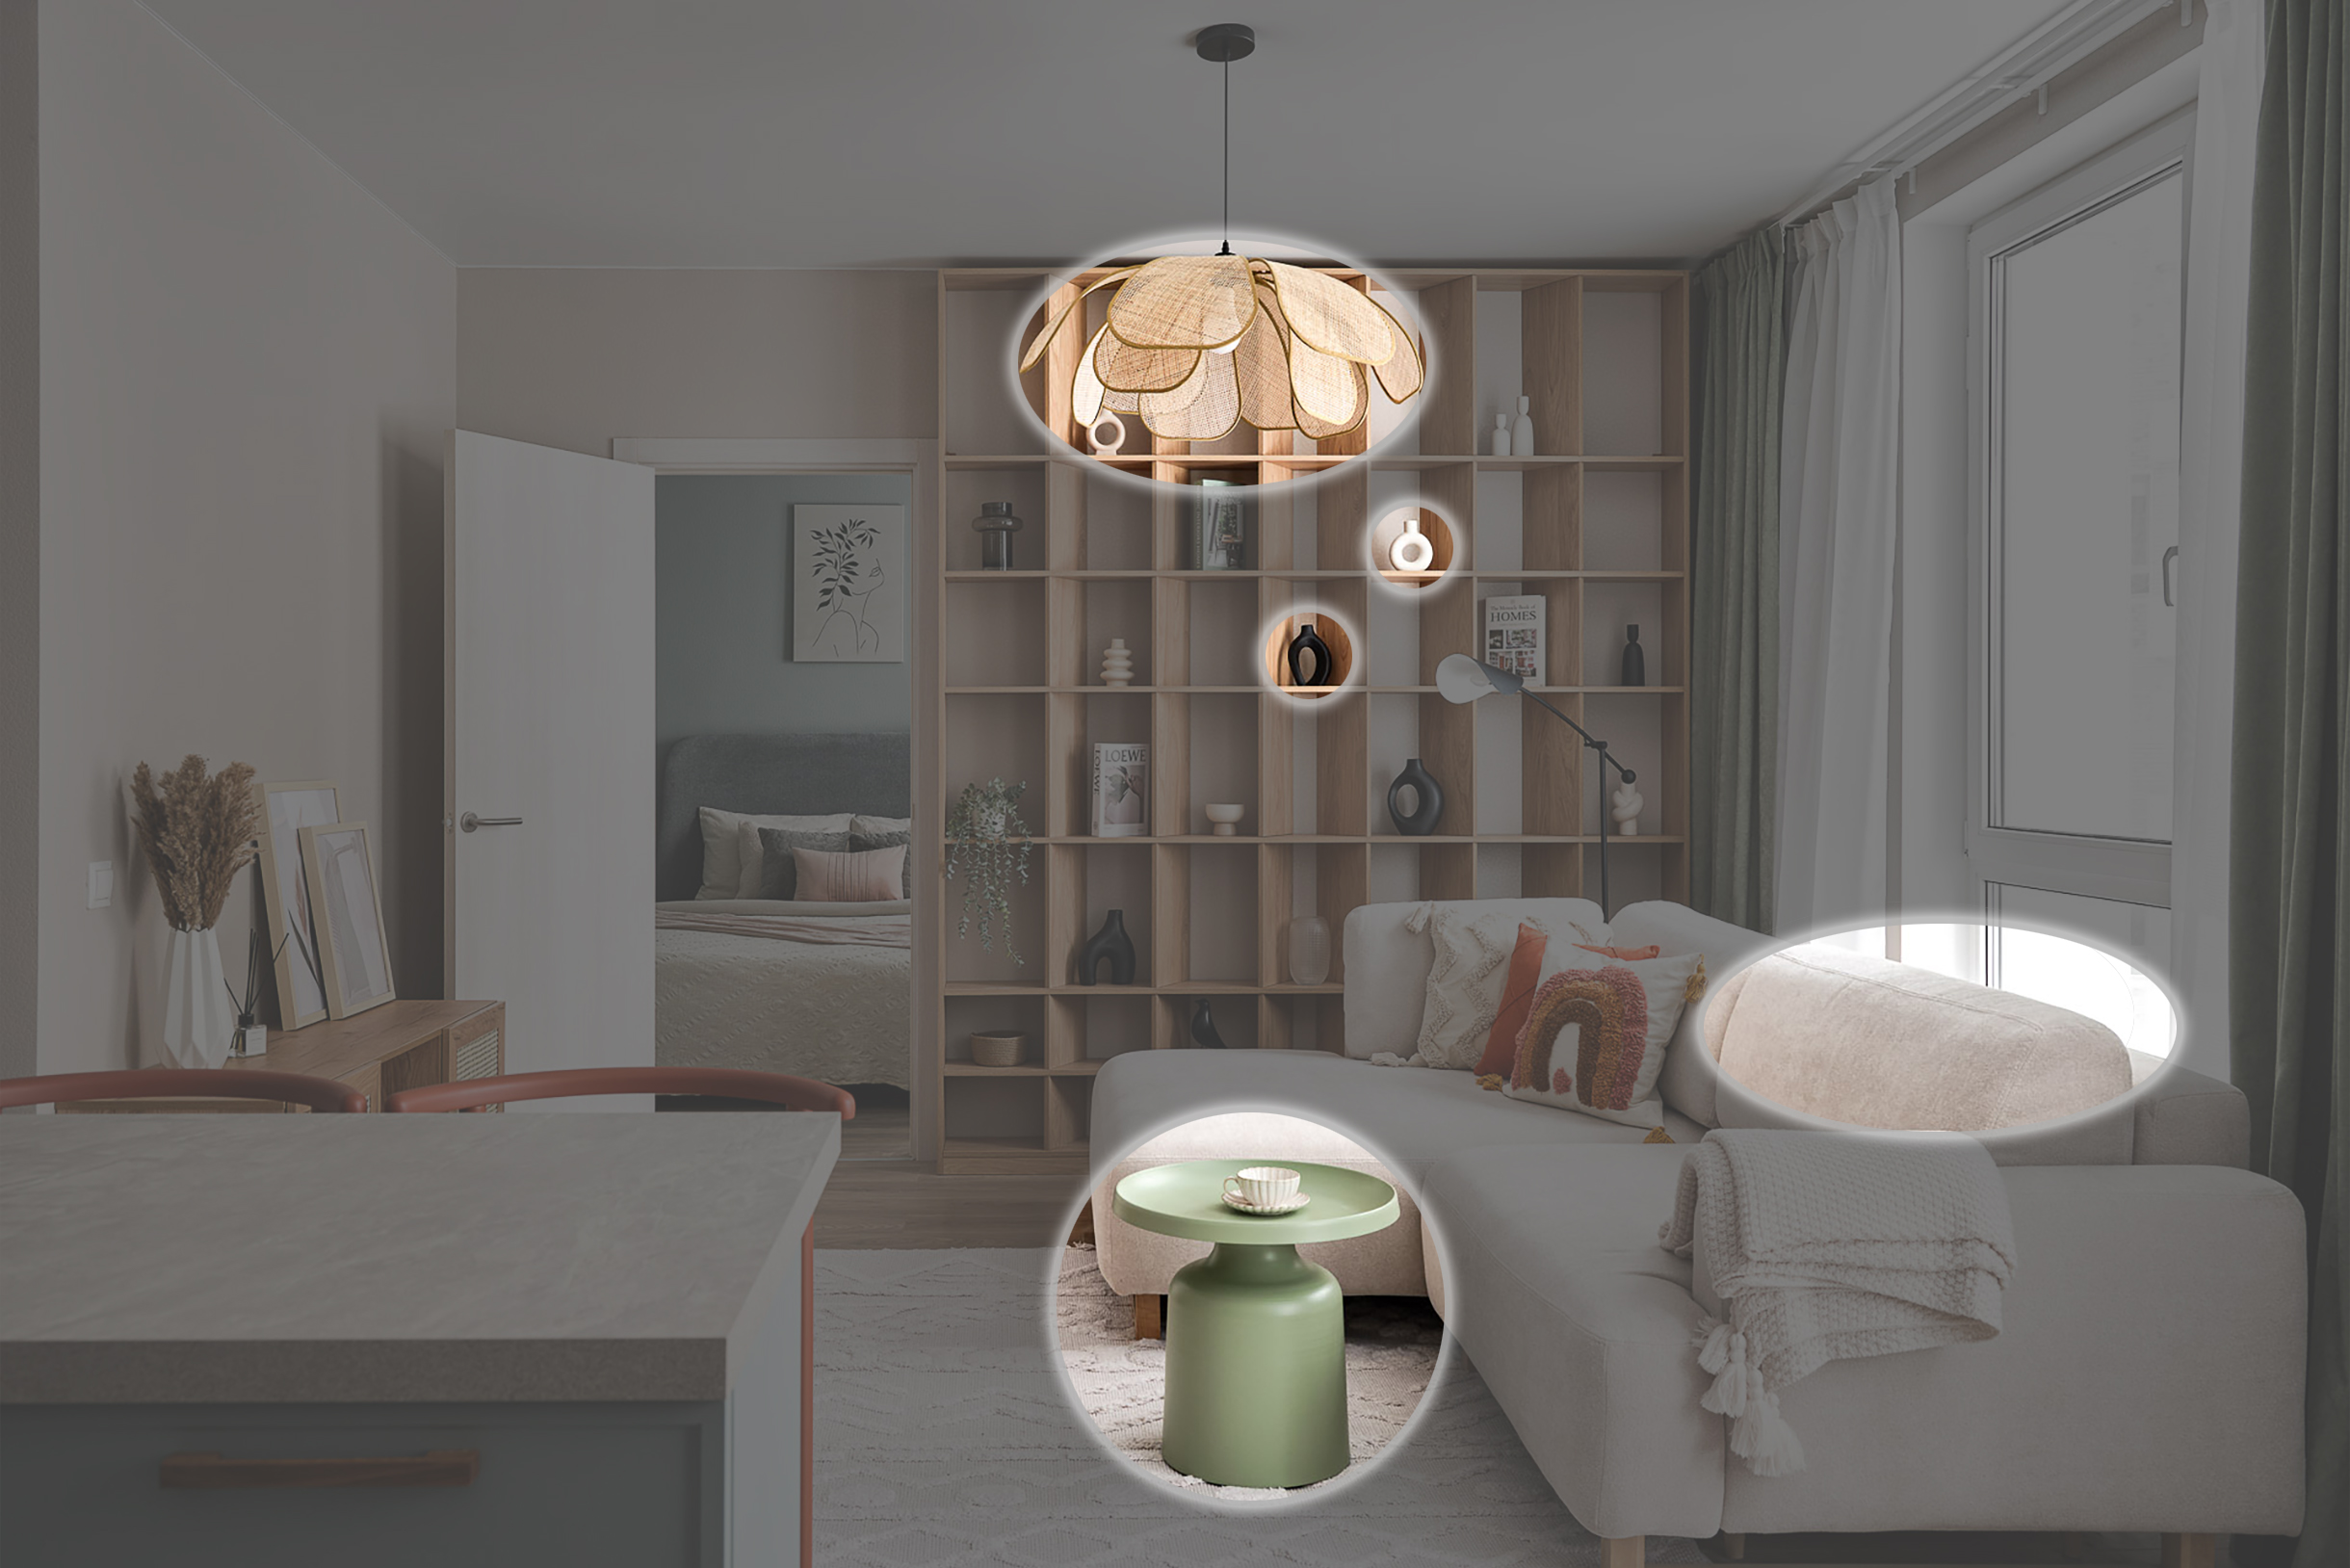 Круглые формы в гостиной части: столик, диван, люстра, детали в стеллаже. Источник: mirzabaeva-homestaging.ru